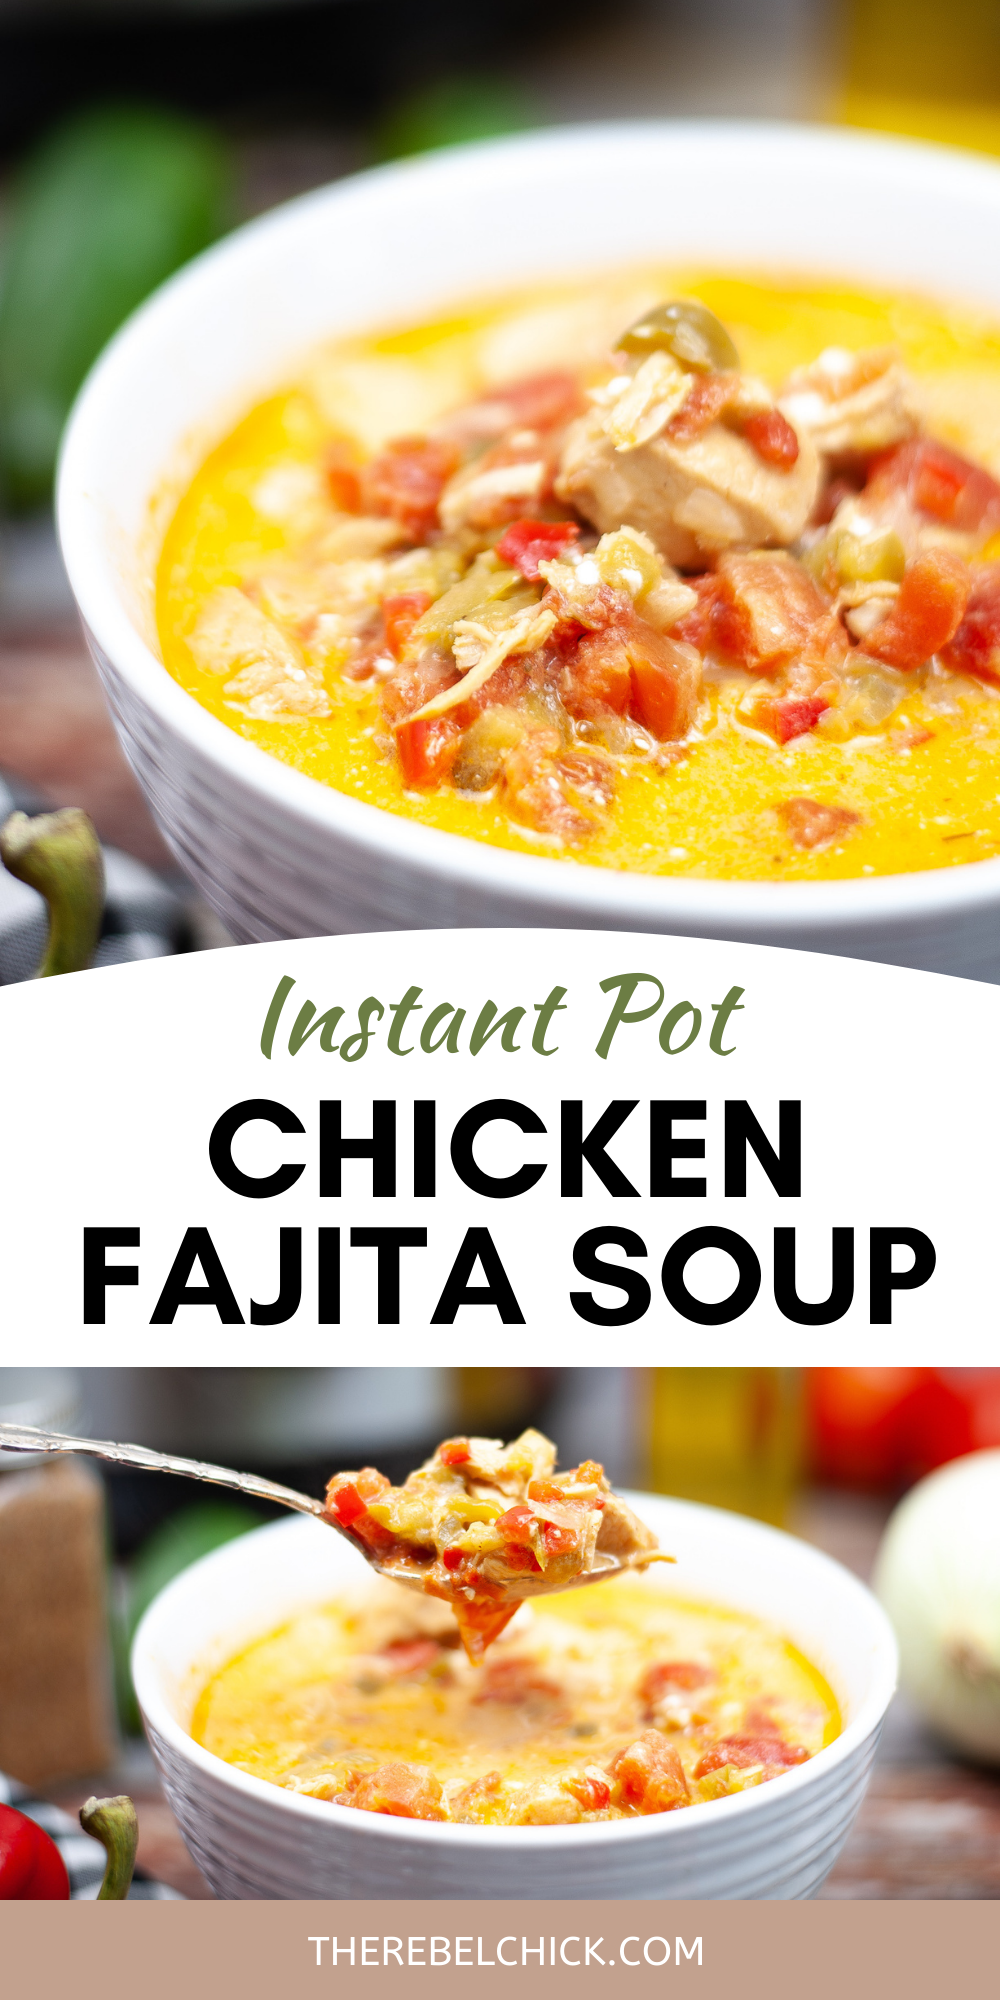 Instant Pot Chicken Fajita Soup Recipe